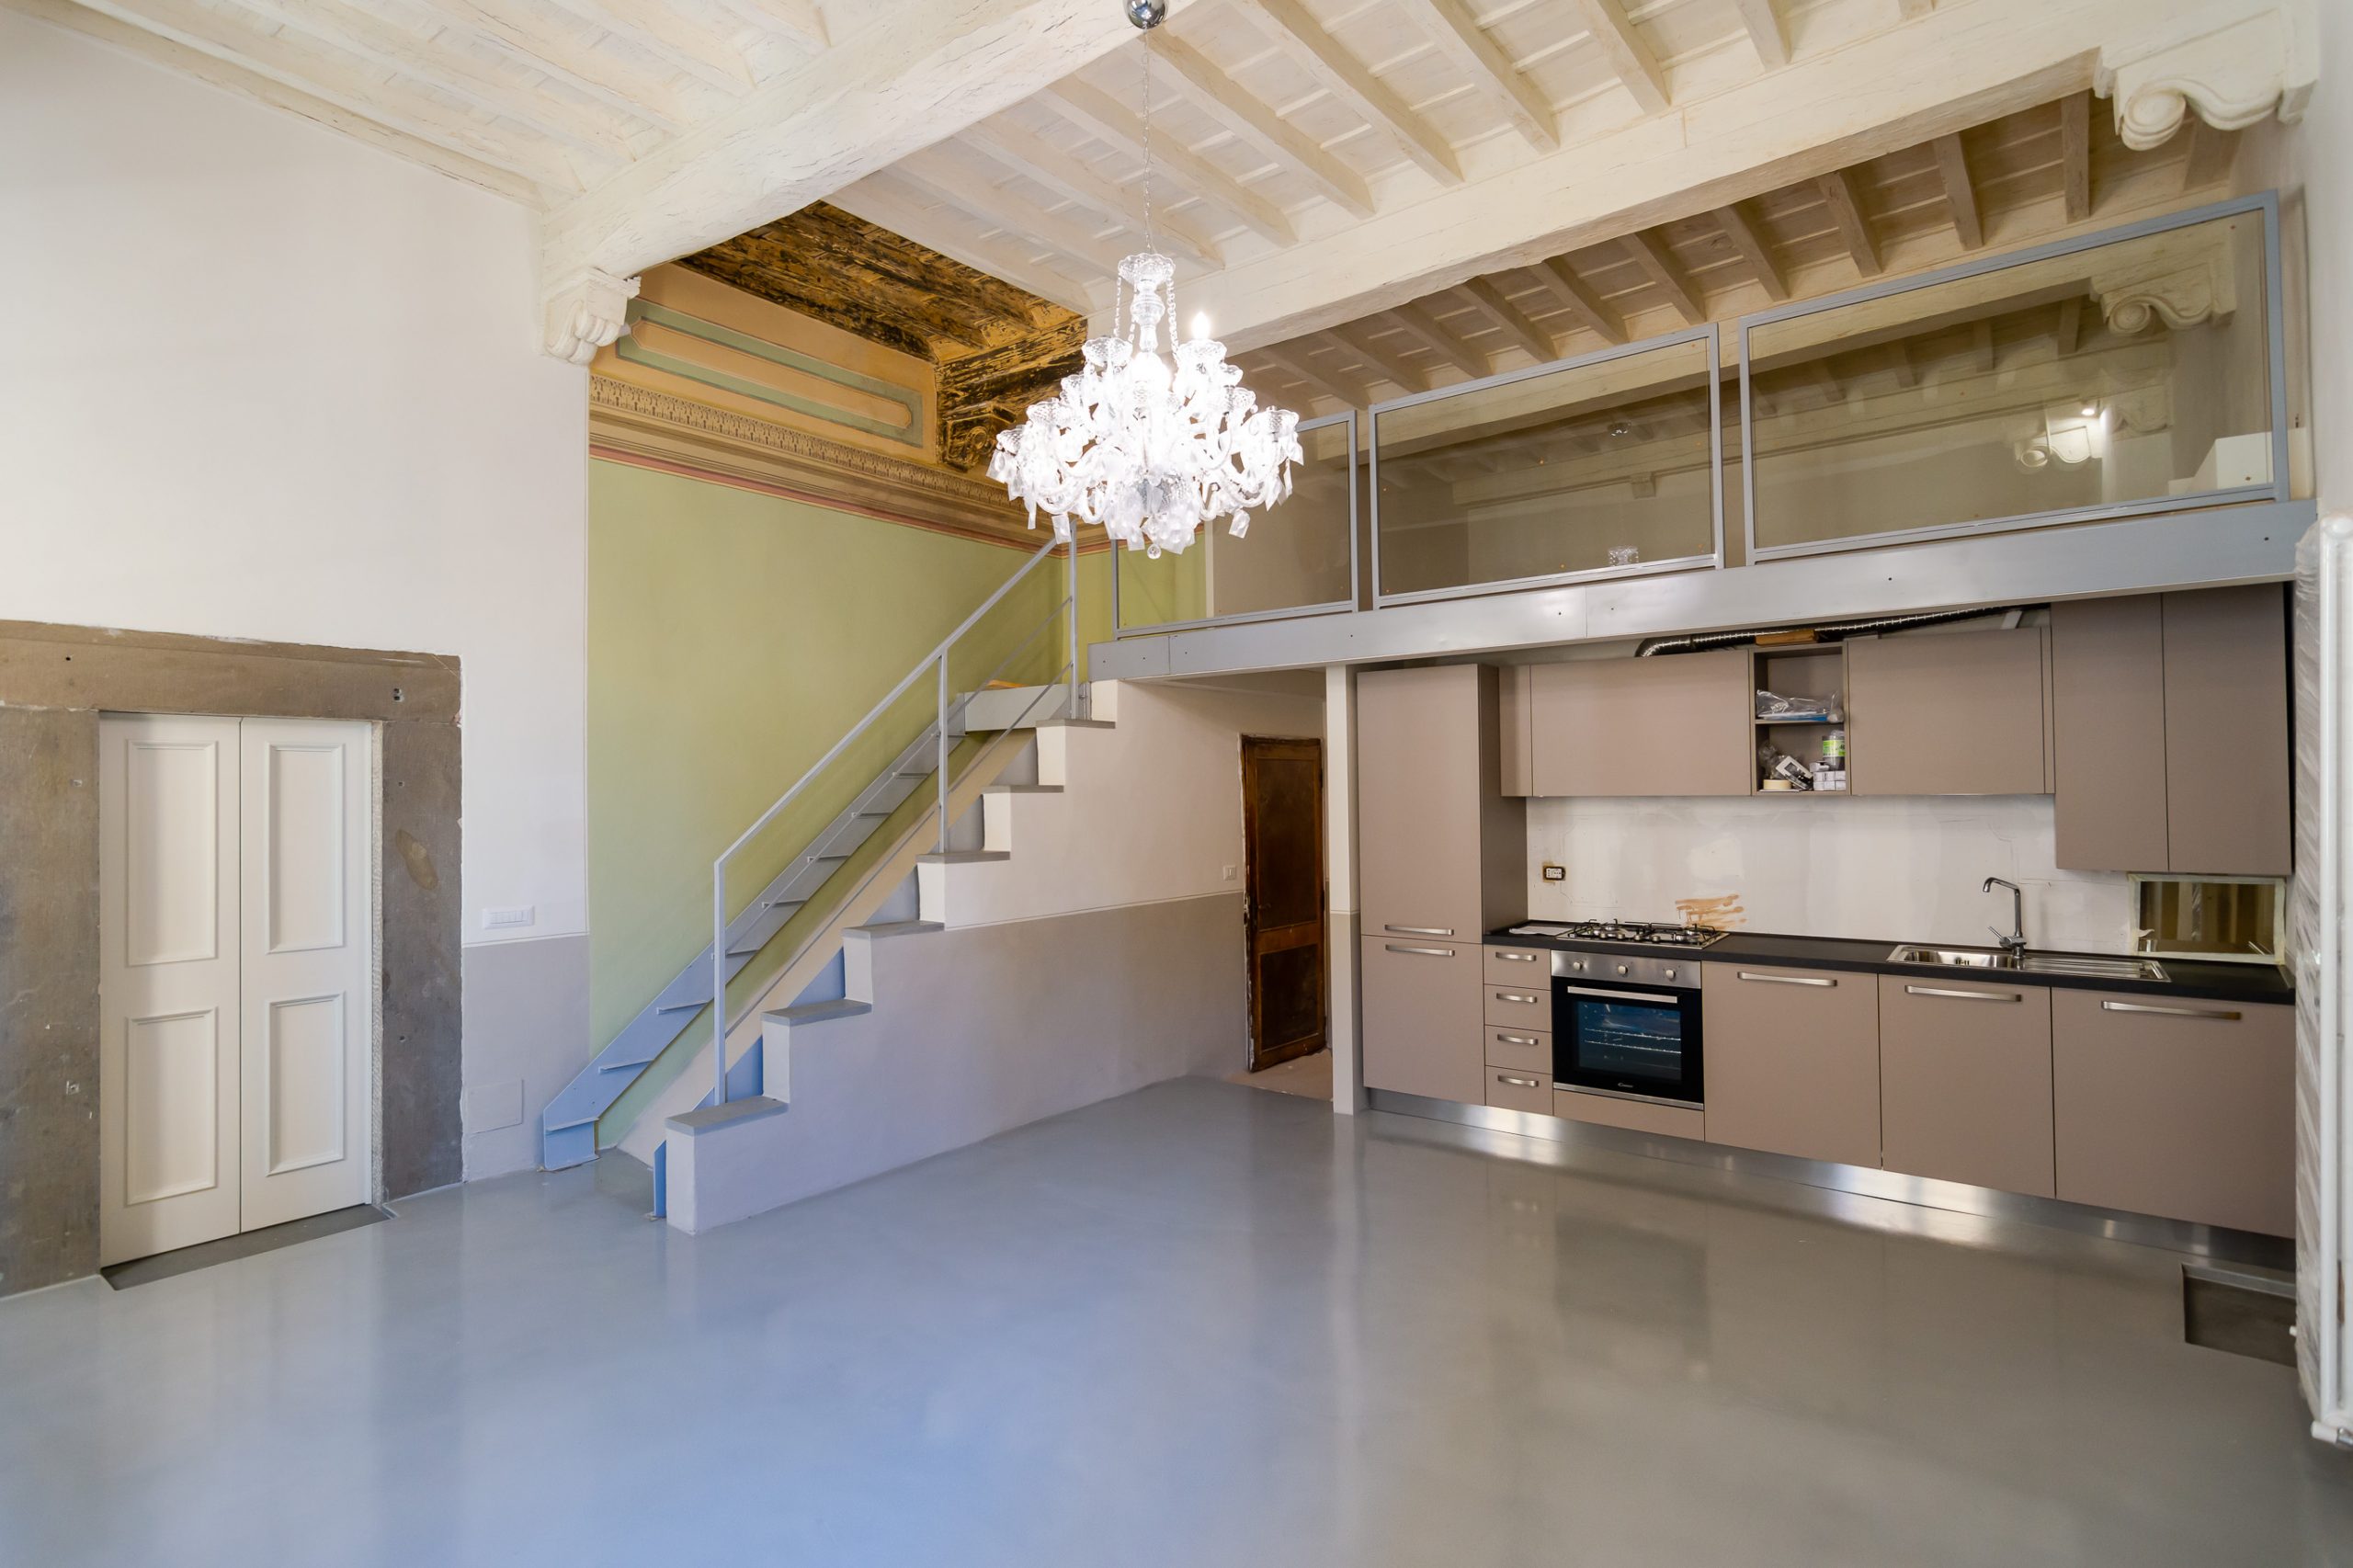 Appartamento con mansarda ristrutturato a Cortona